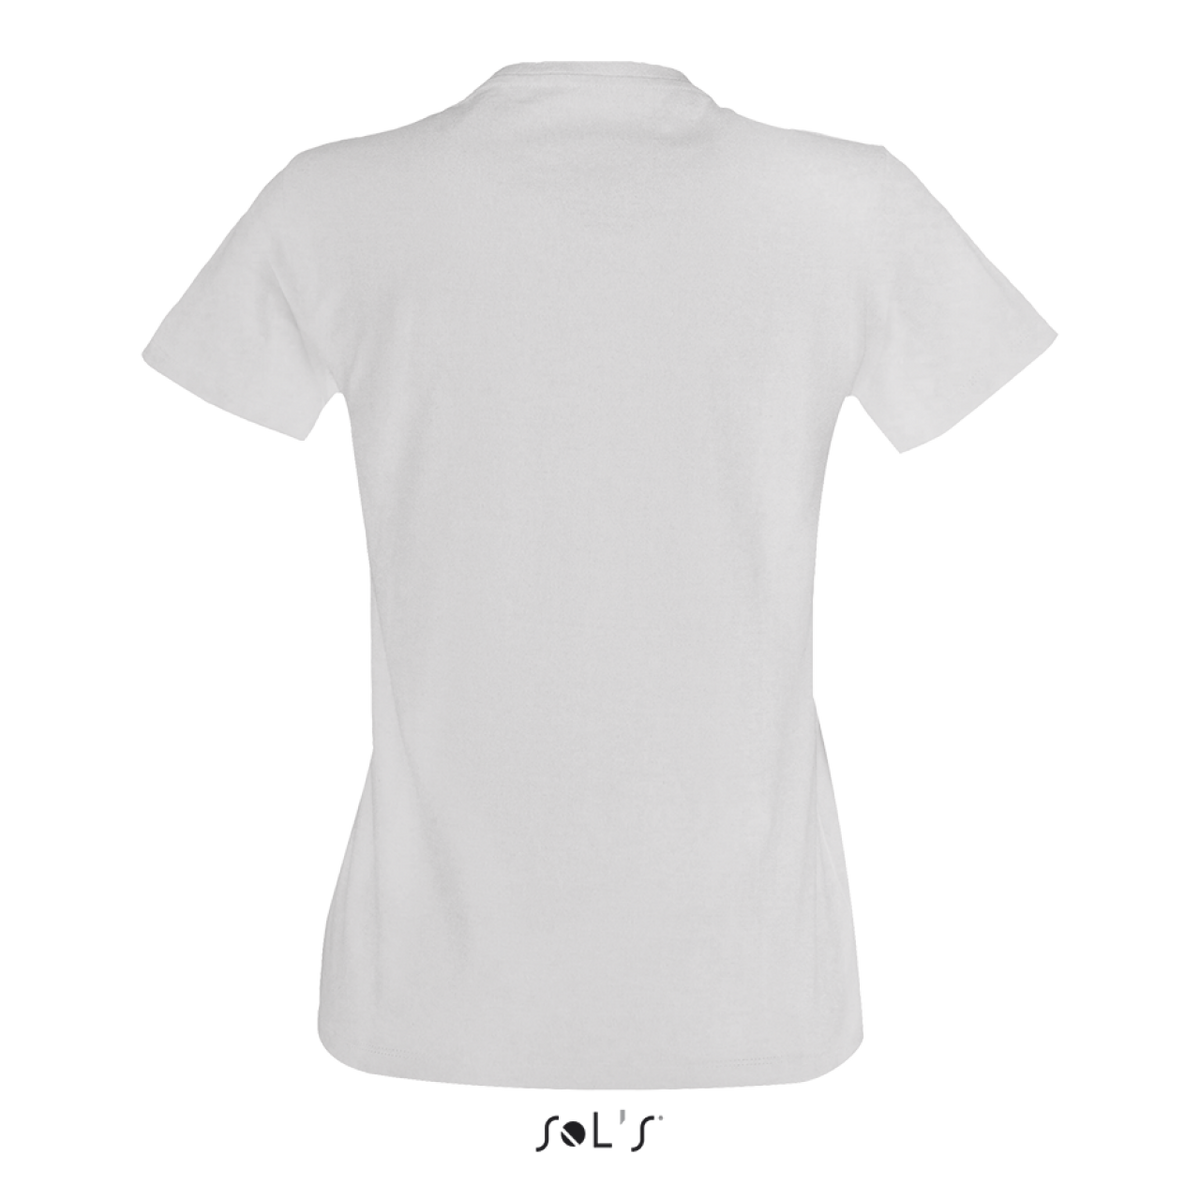 SOL'S Damen T-Shirt Shirt Baumwolle Rundhals Kurzarm Basic Damenshirt